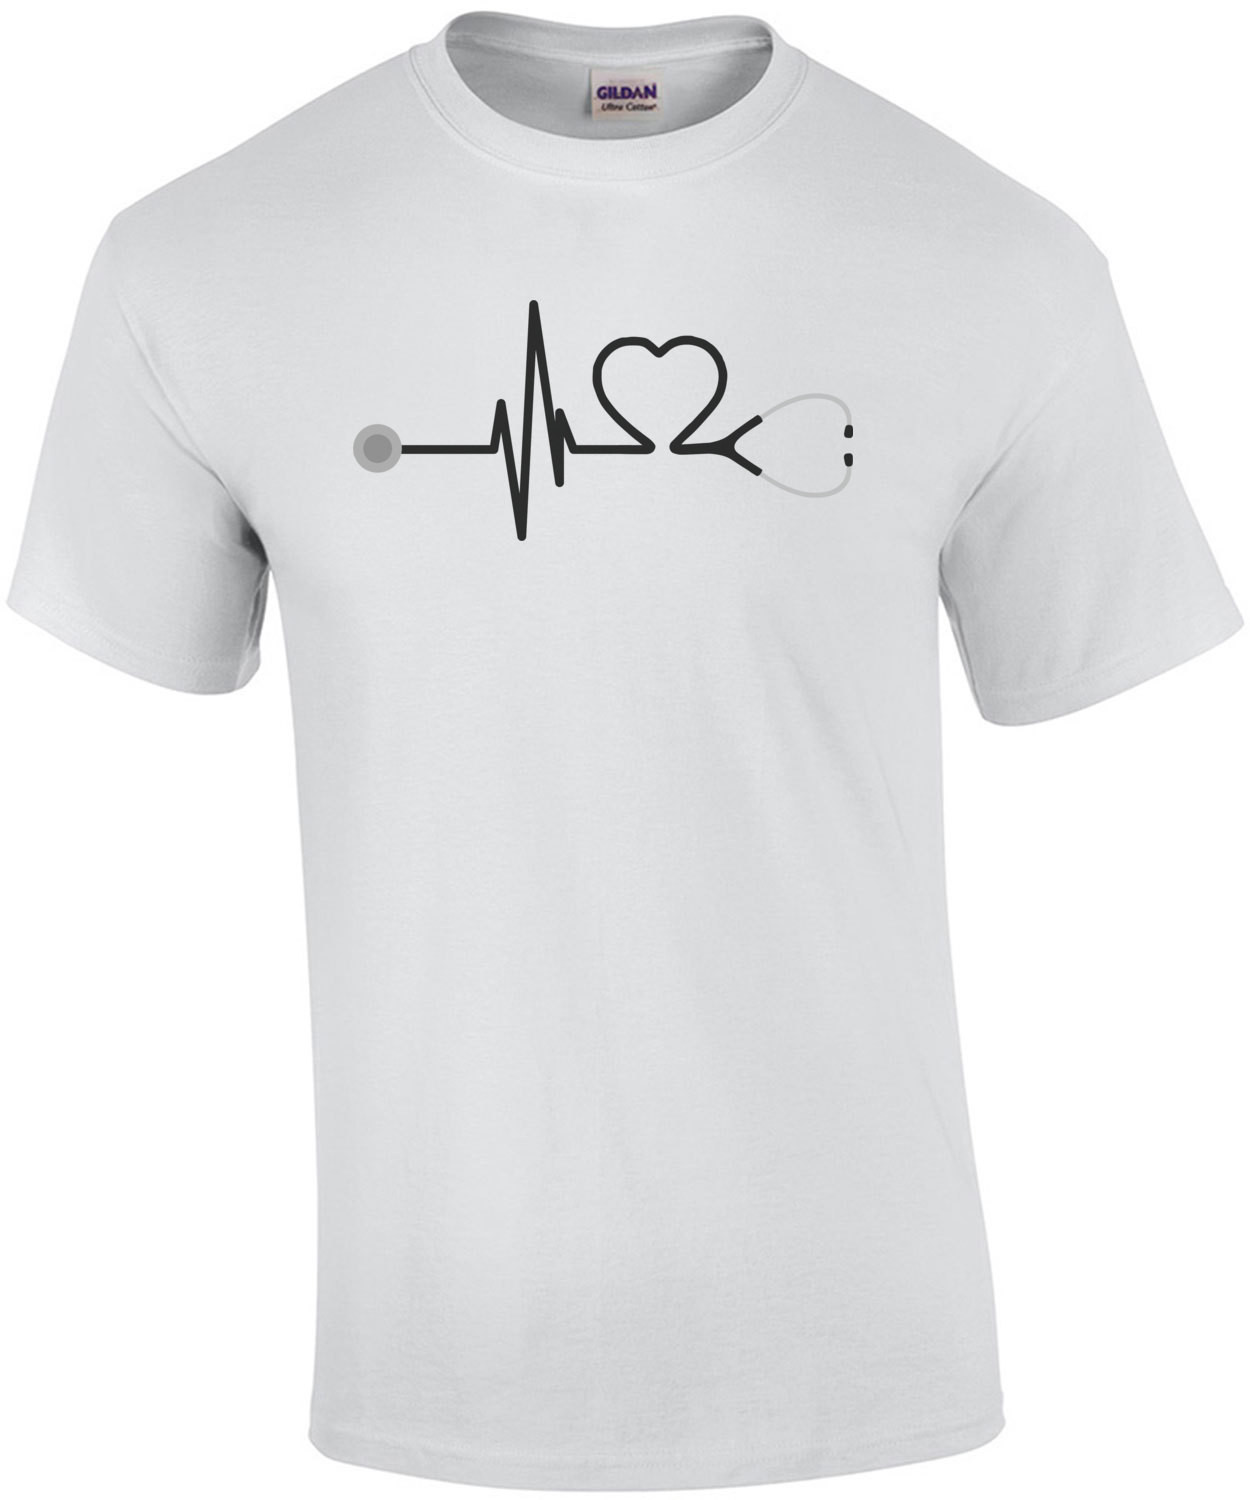 RN - Registered Nurse - stethoscope heart t-shirt